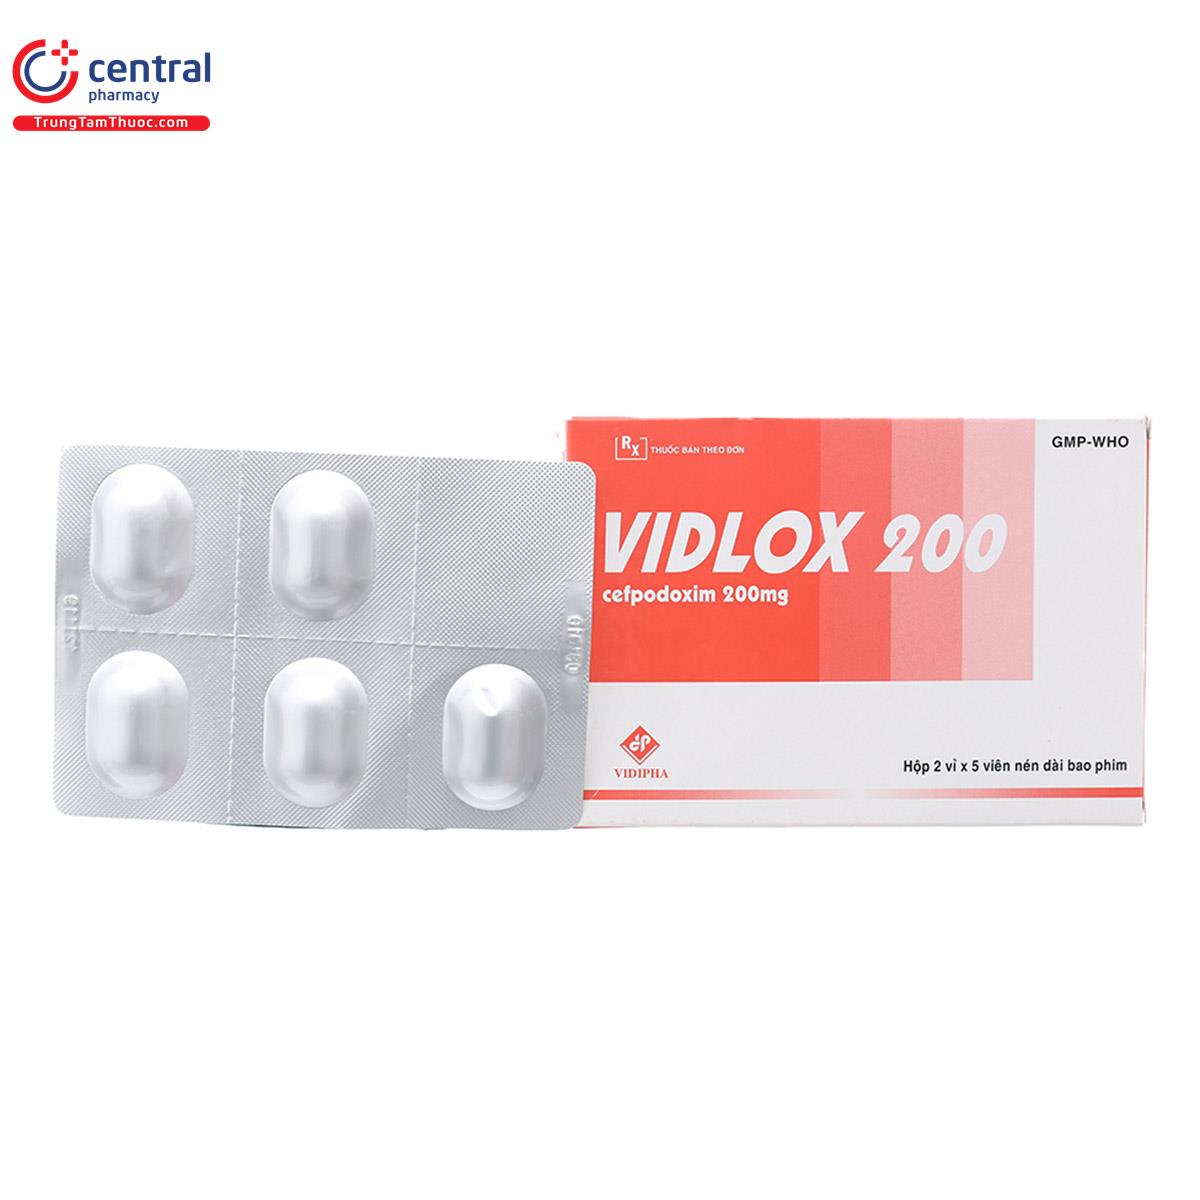 vidlox200 1 A0242